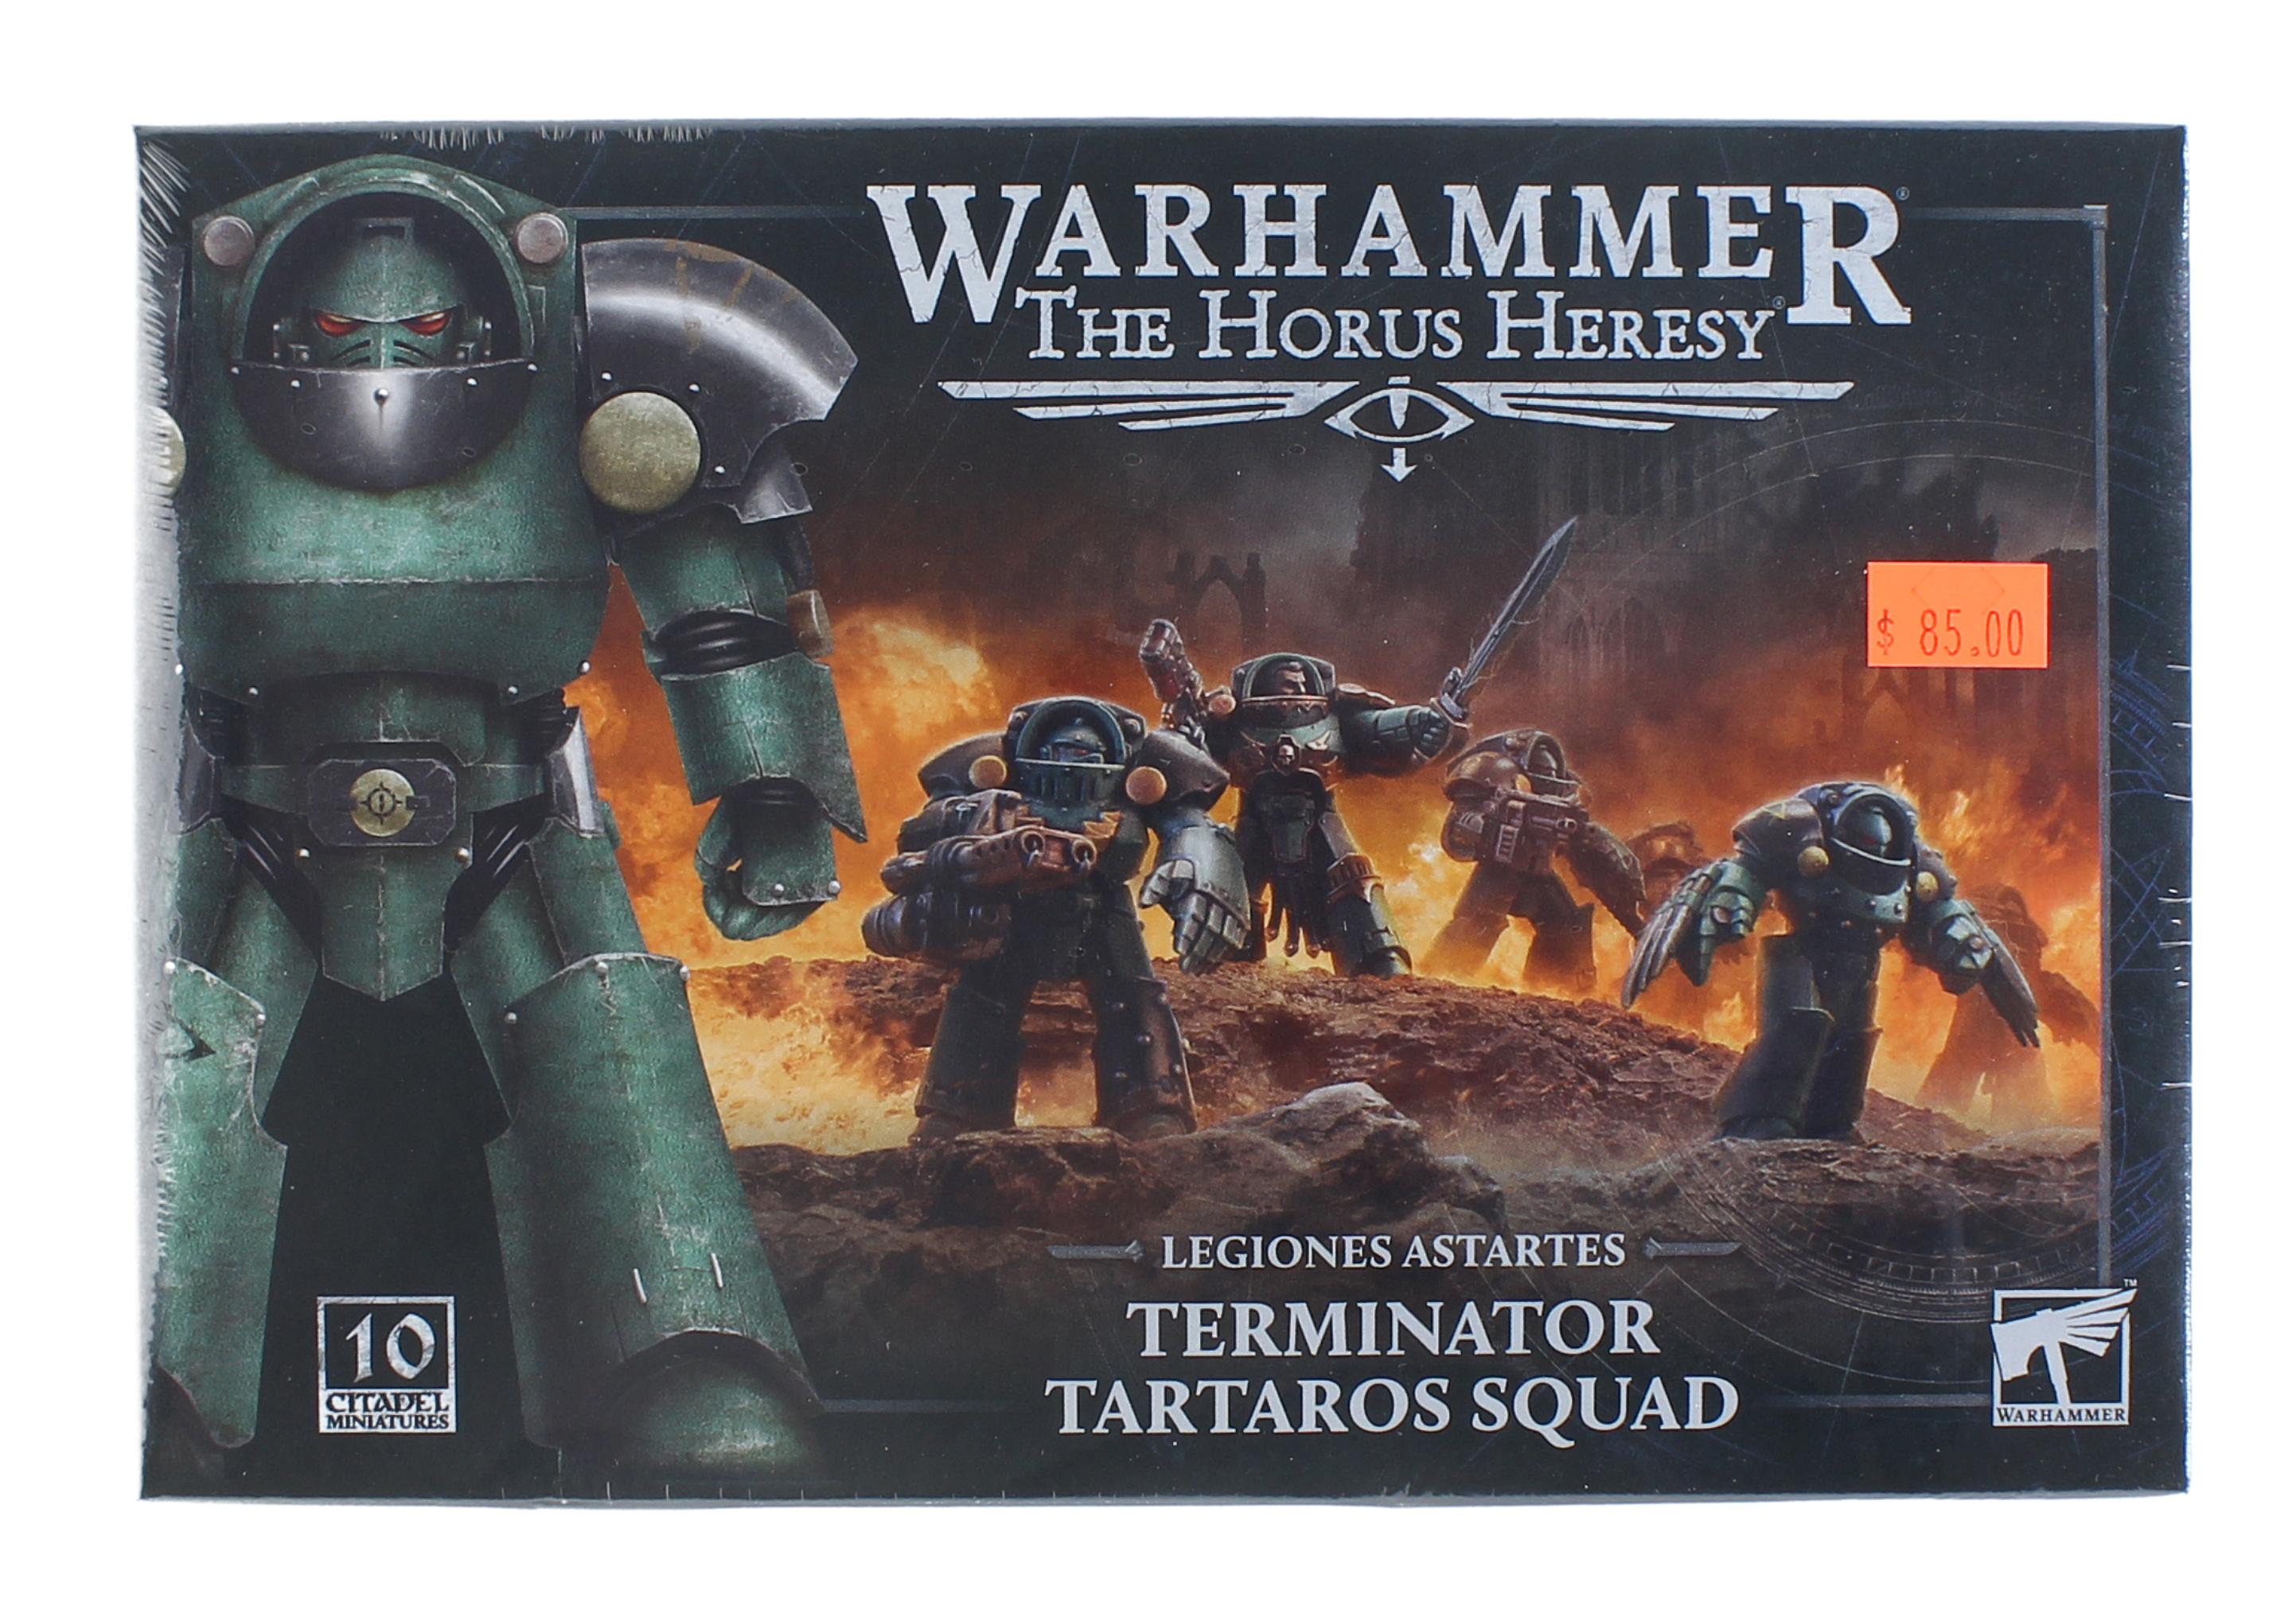 Legiones Astartes: Tartaros Terminator Squad